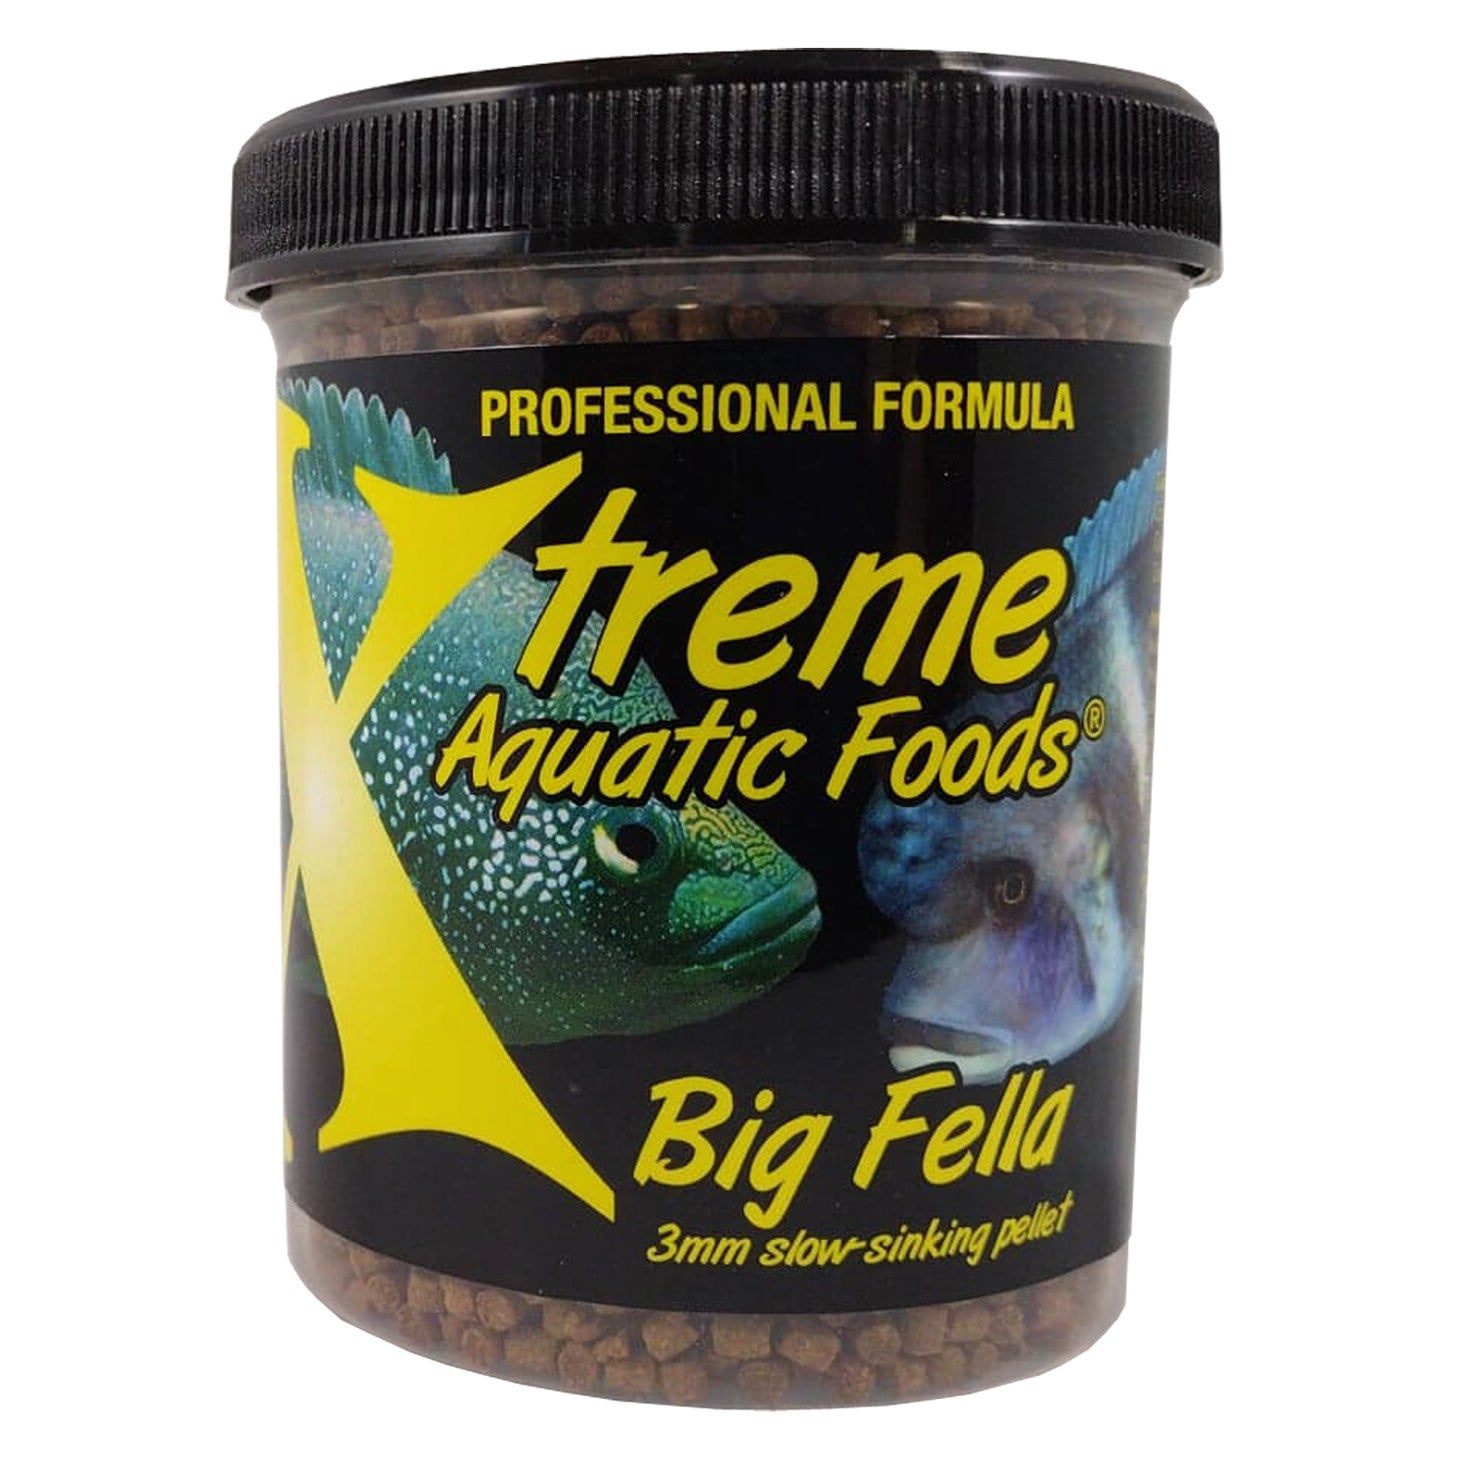 Xtreme Aquatic Foods Big Fella 3mm slow-sinking pellet 5 oz (142g) 893427001435 Super Cichlids